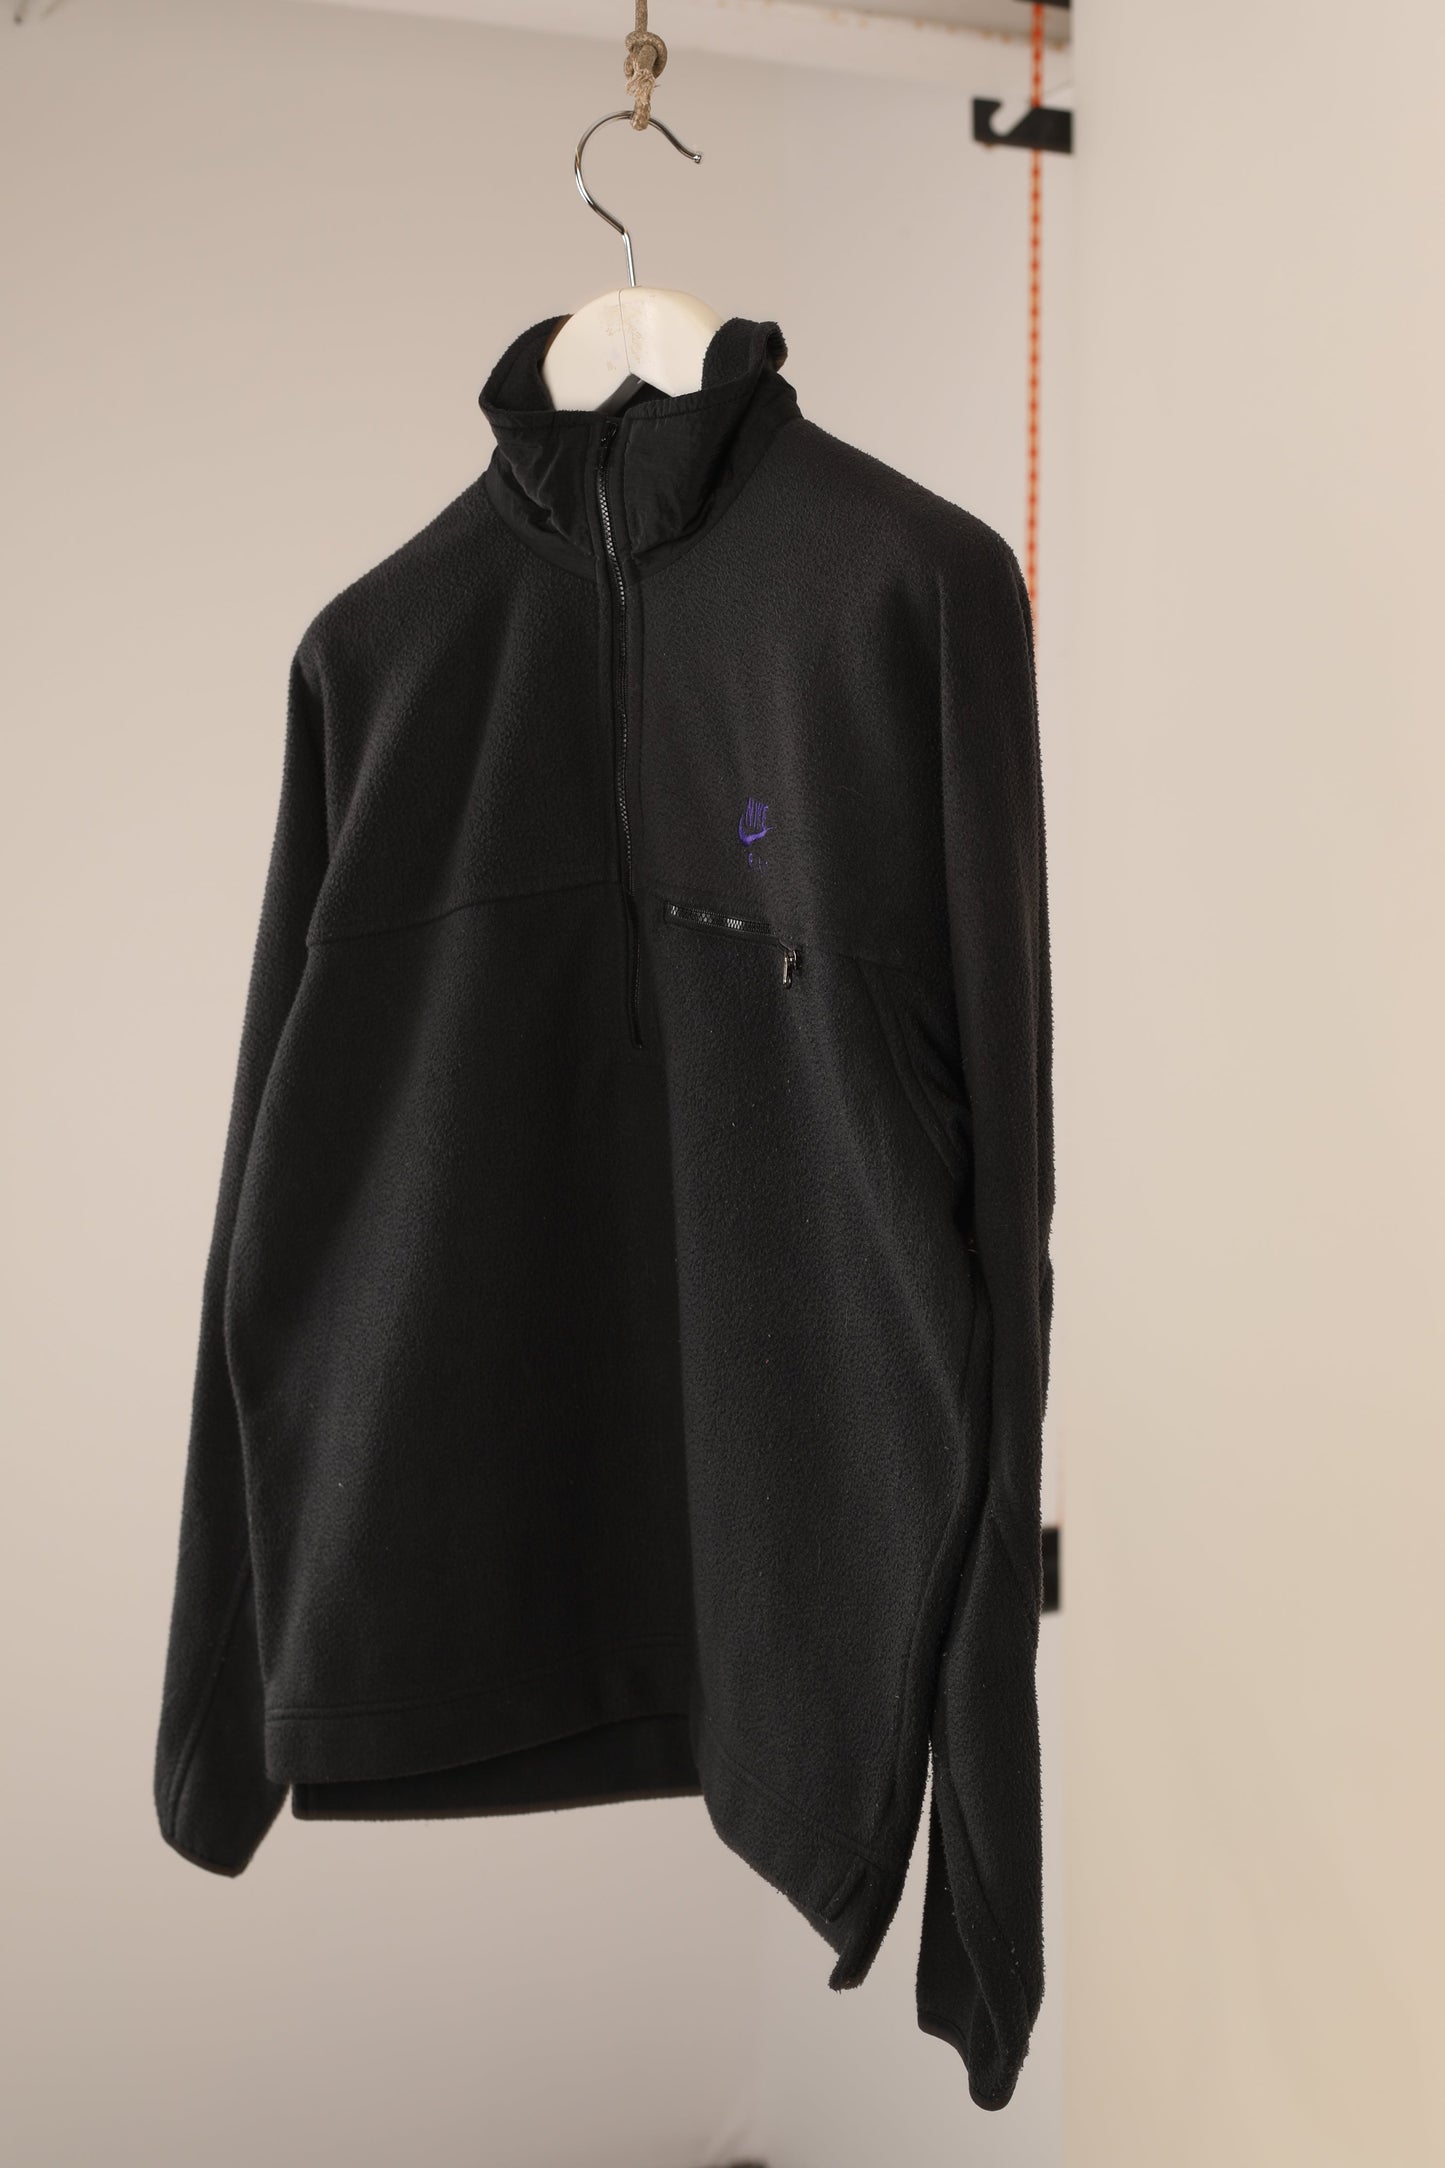 90s Nike FIT 1/4 zip fleece jacket